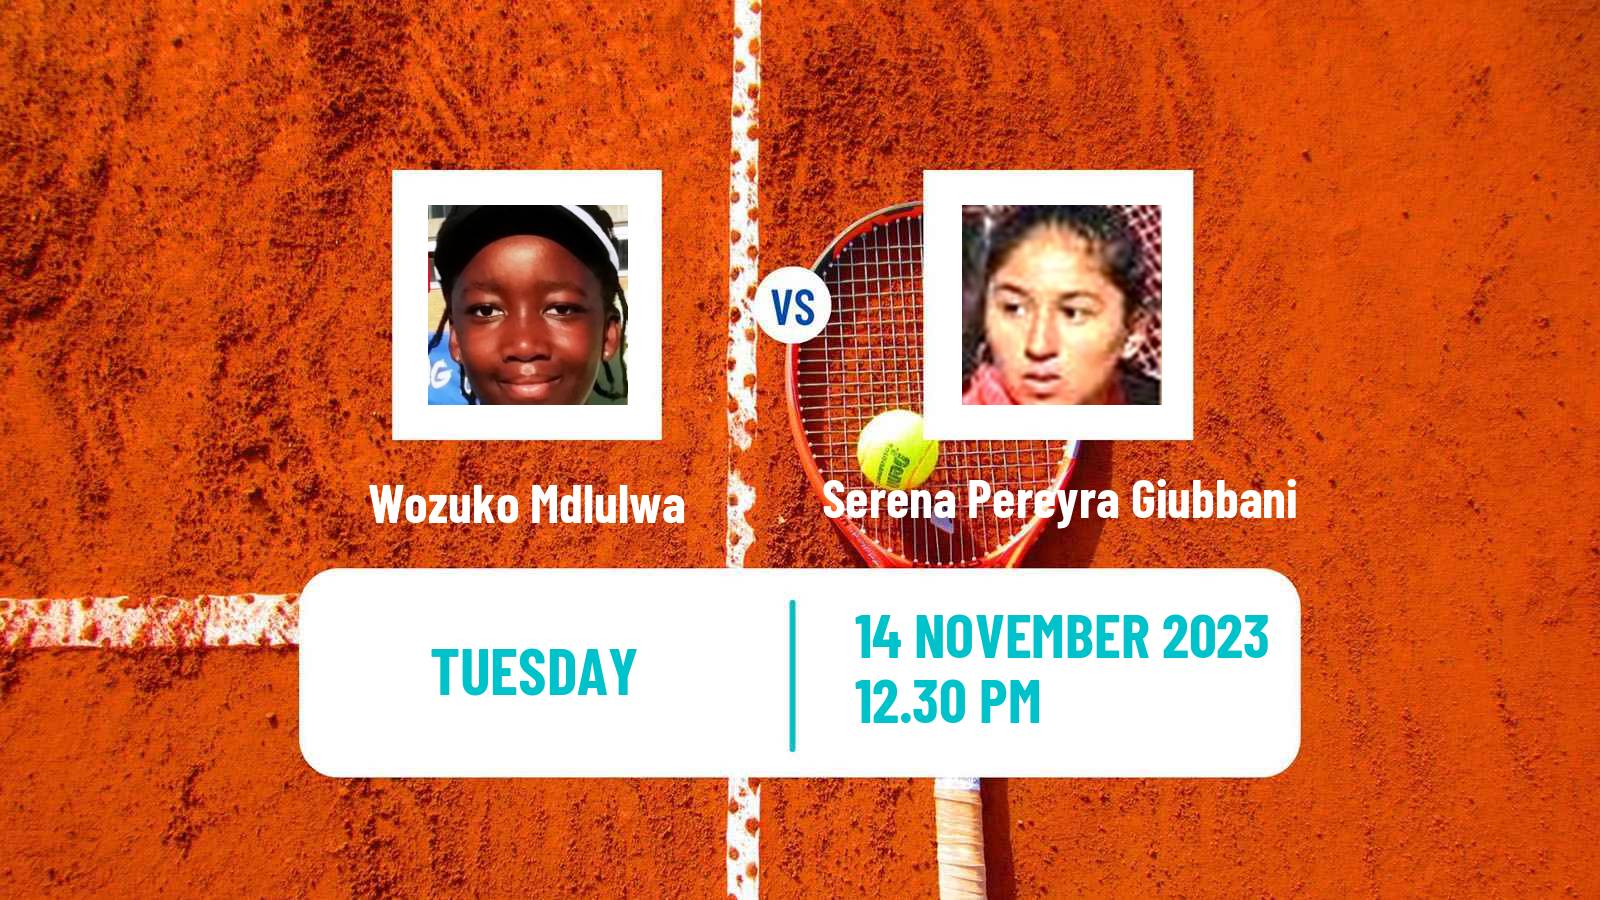 Tennis ITF W15 Buenos Aires 2 Women Wozuko Mdlulwa - Serena Pereyra Giubbani